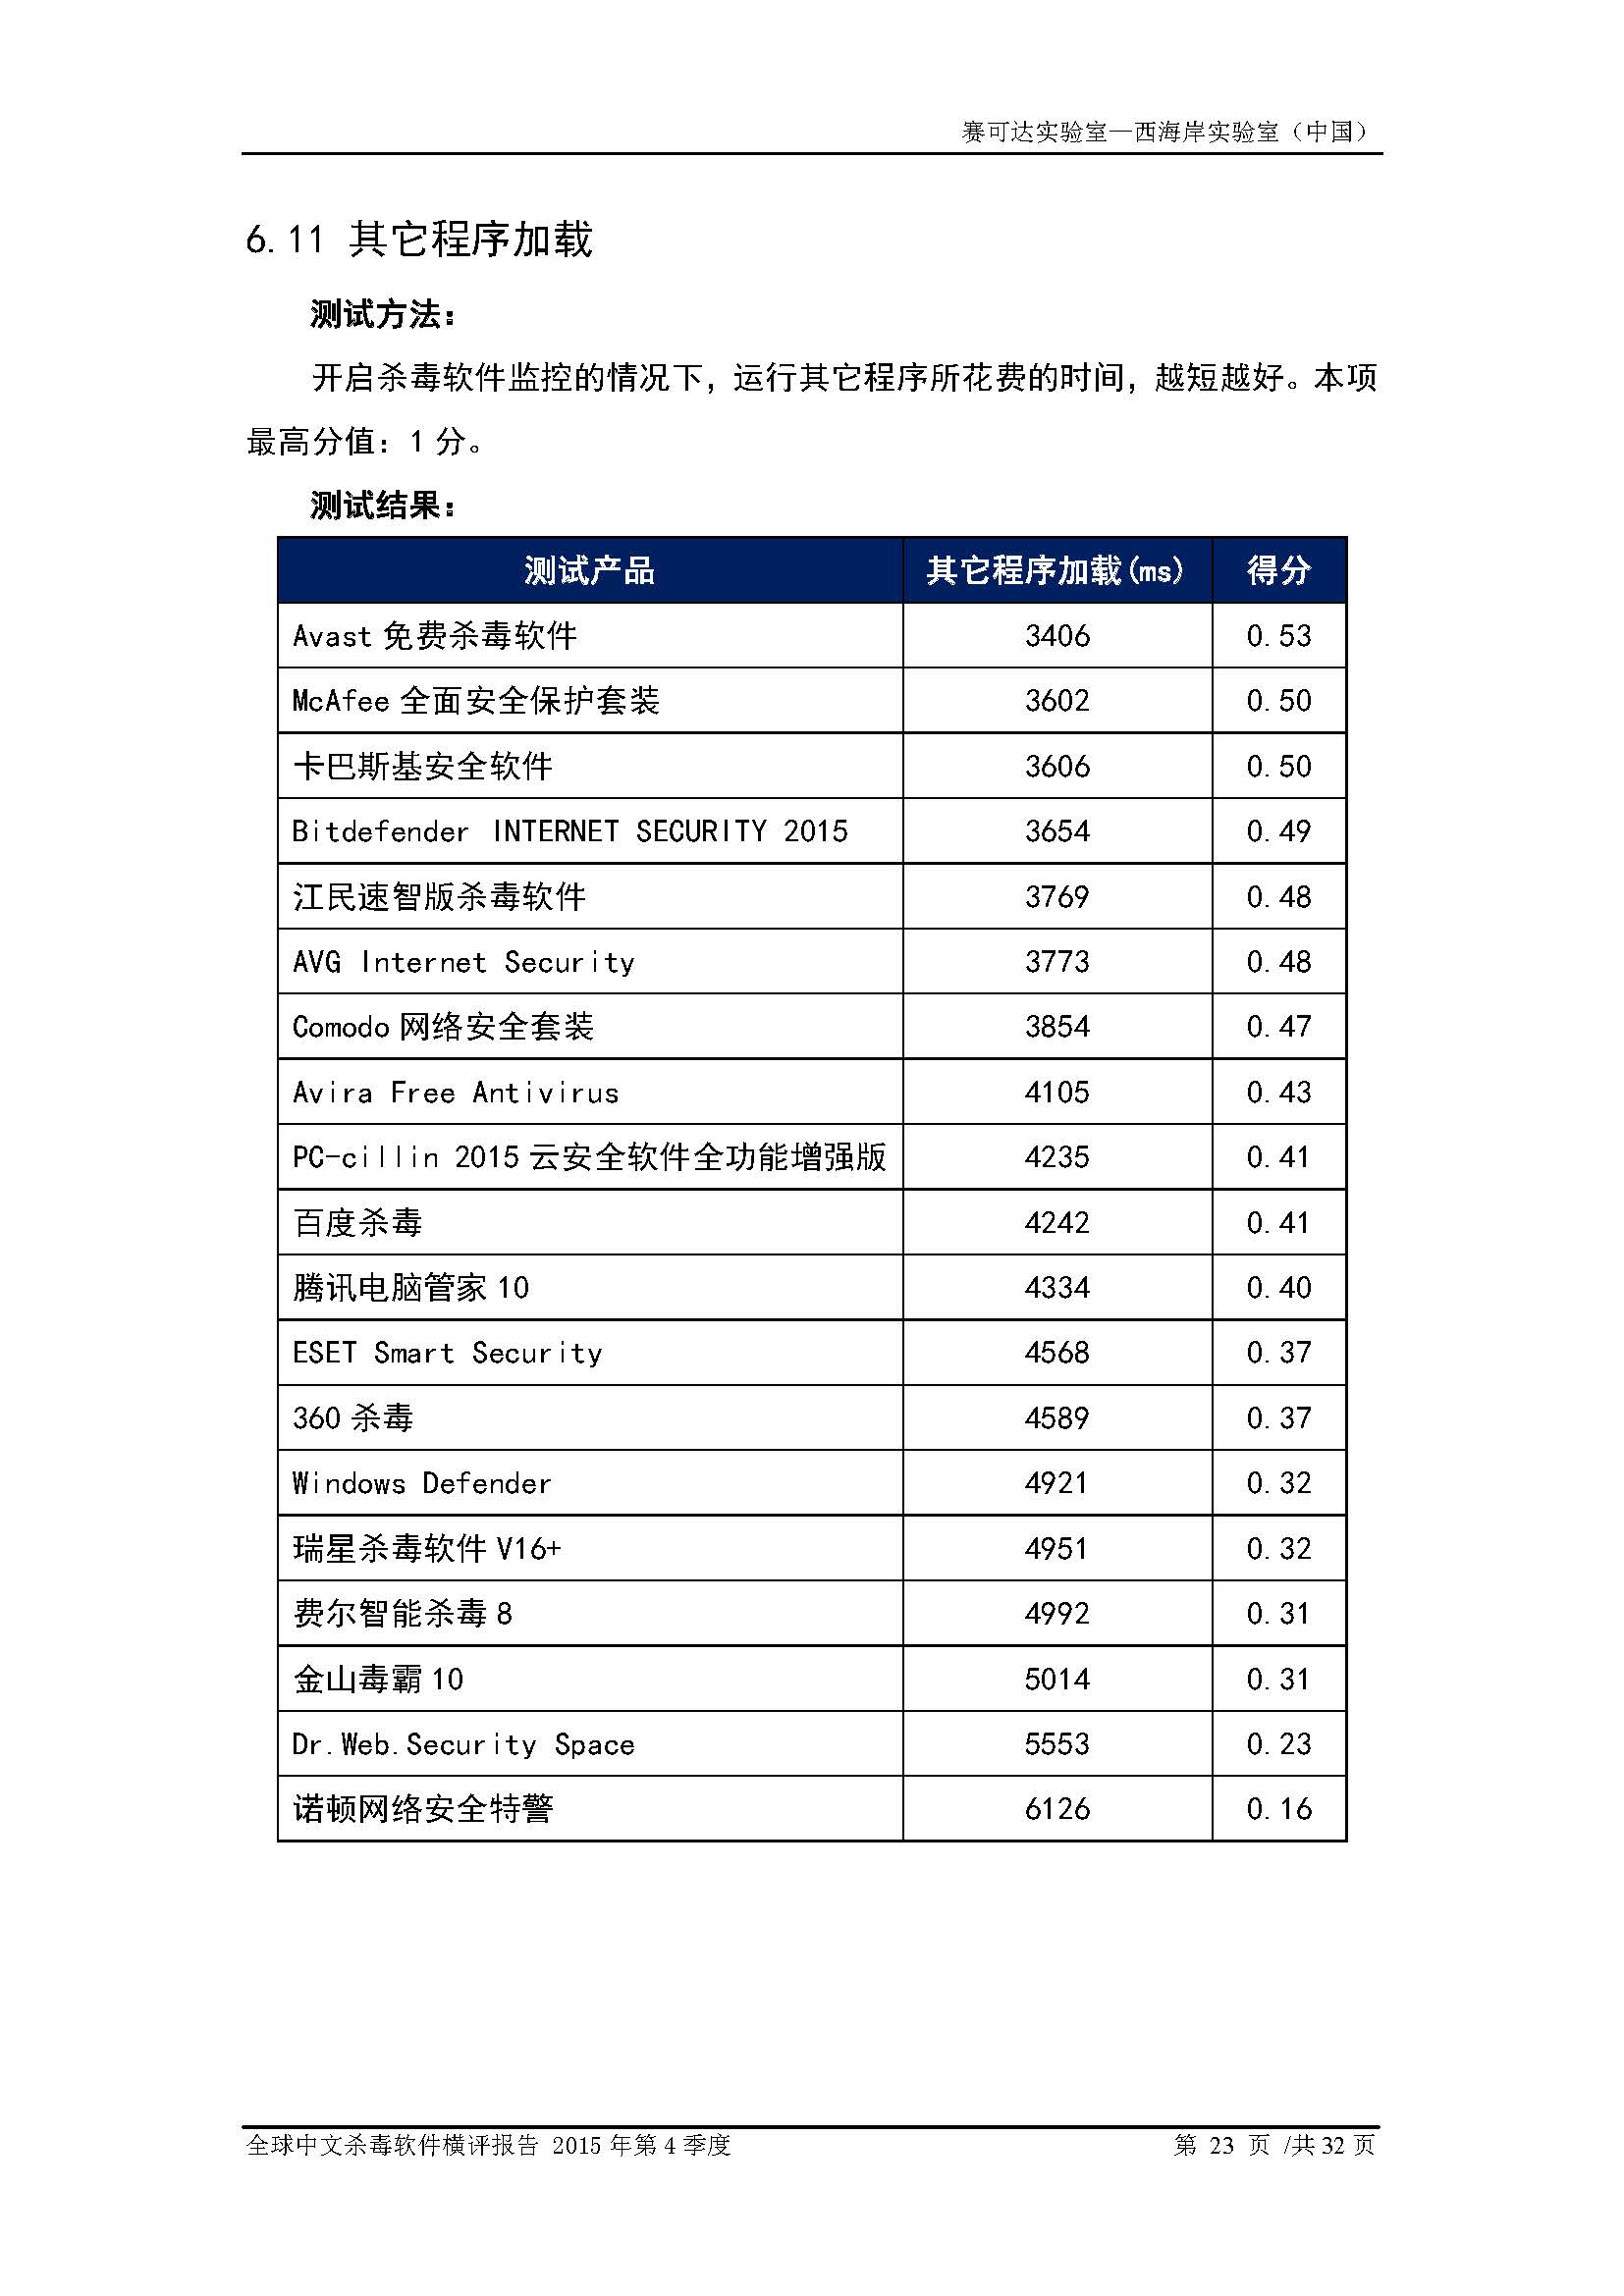 中文PC杀毒软件横评测试报告- Windows 8.1【中文版】.pdf (_Page_25.jpg